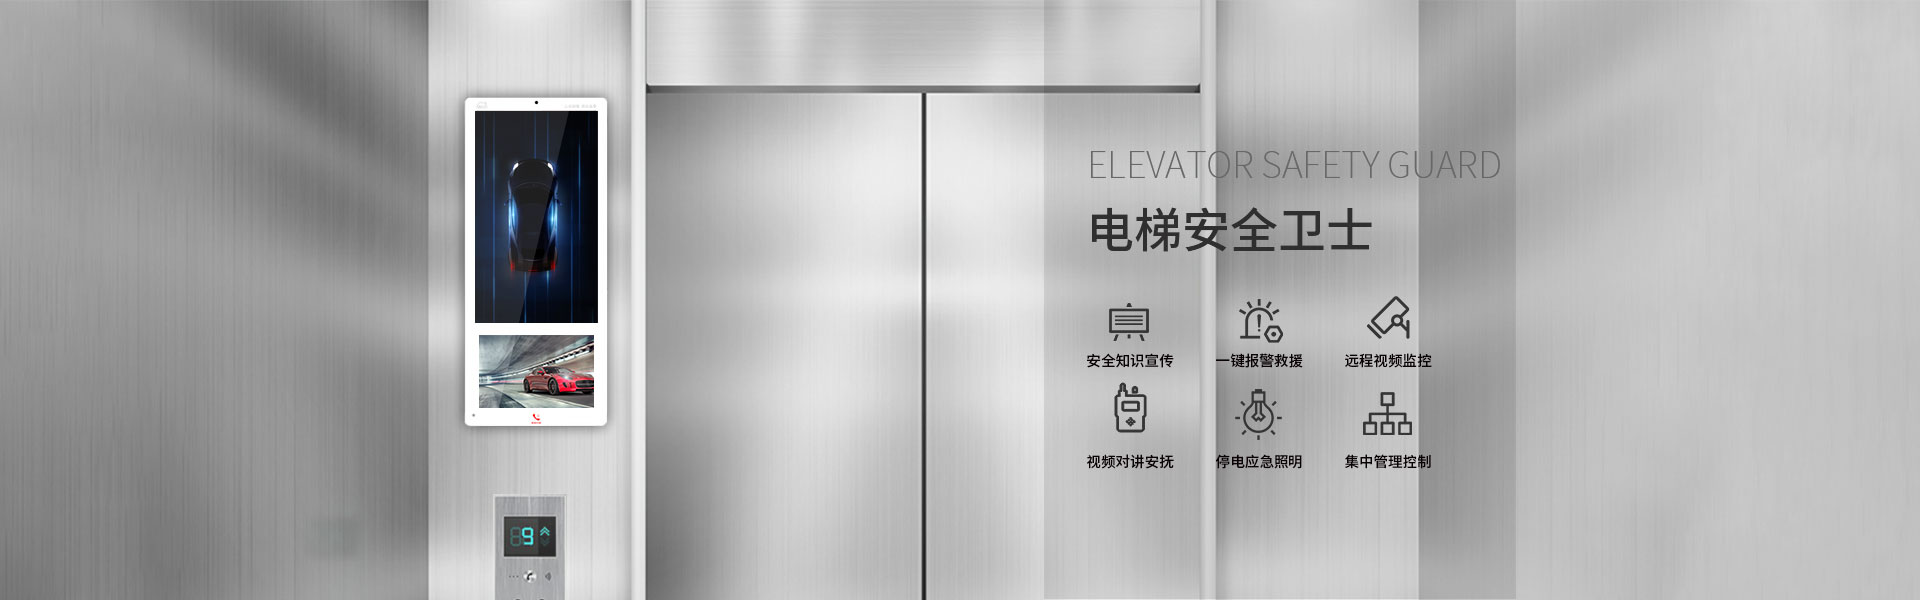 深圳电梯应急处置服务平台亮点